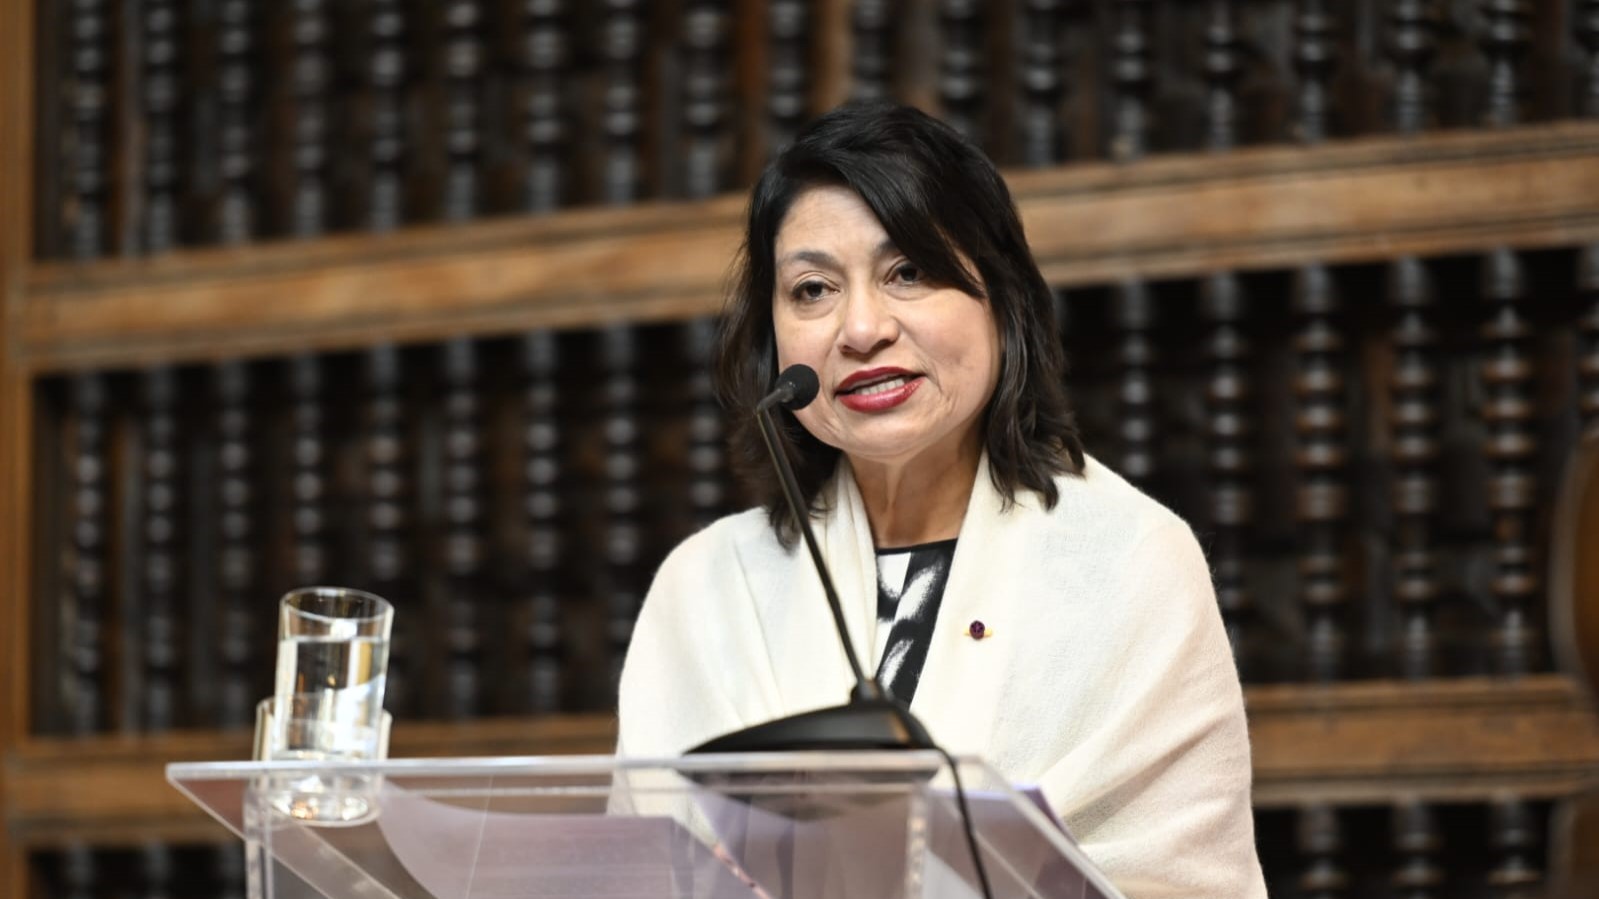 La canciller Ana Cecilia Gervasi habló en nombre del gobierno peruano sobre la presunta intromisión de Colombia en los asuntos del Perú.  
Foto: @CancilleriaPeru